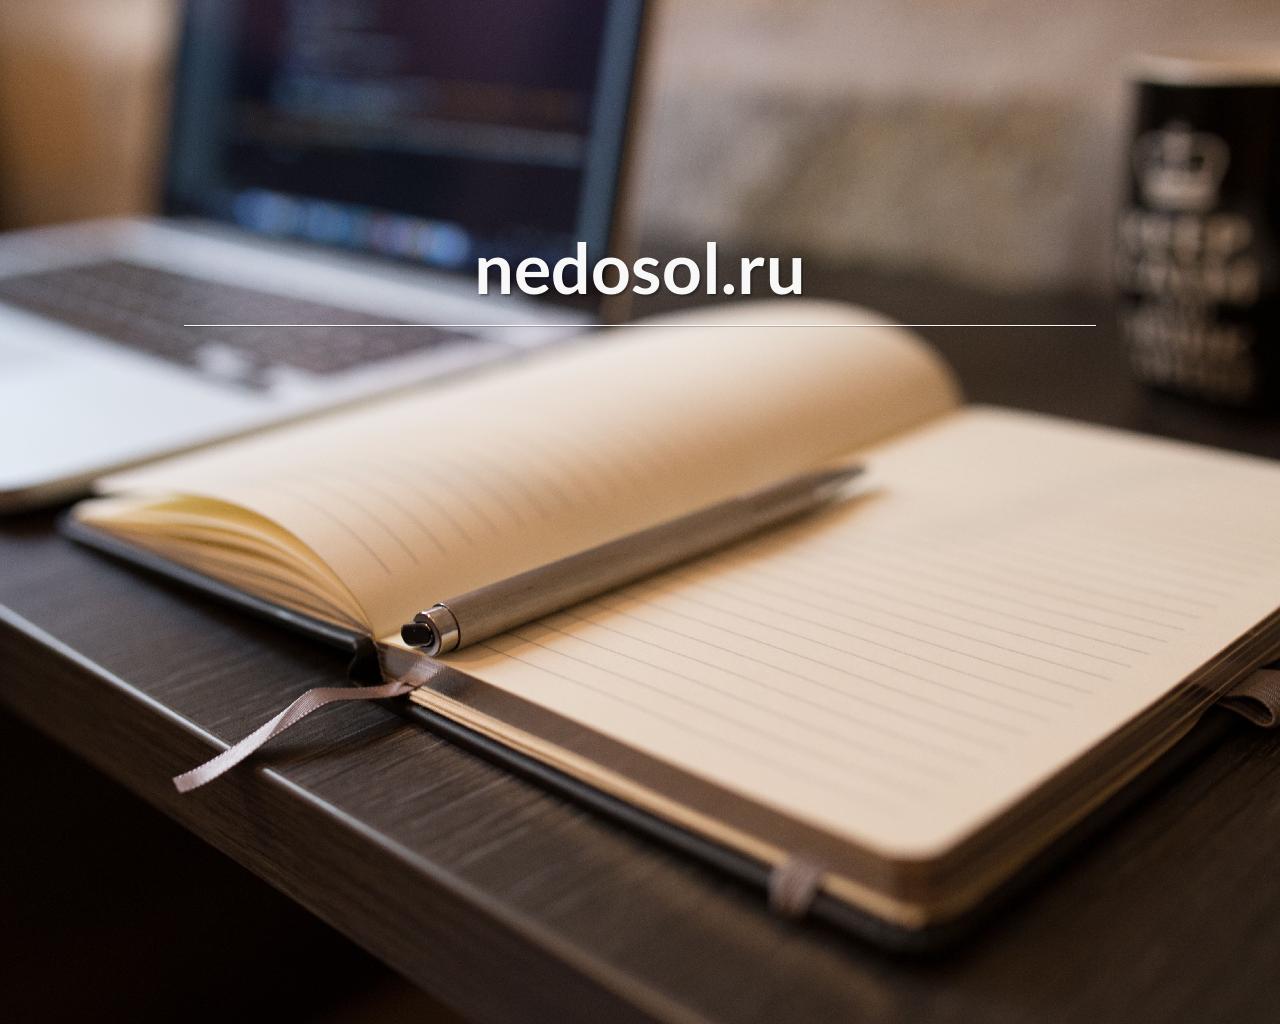 Изображение сайта nedosol.ru в разрешении 1280x1024